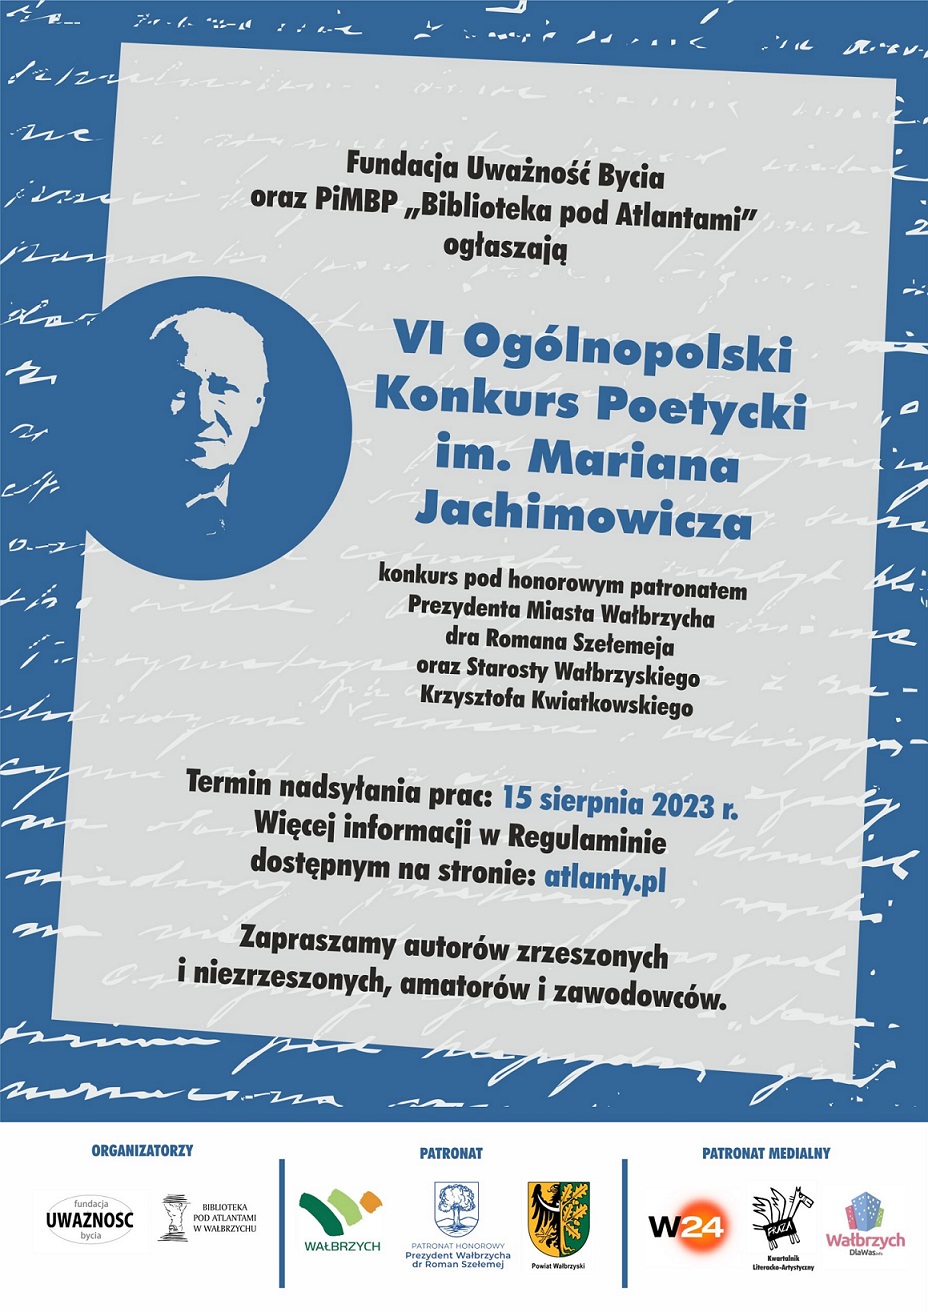 Plakat promujący VI Ogólnopolski Konkurs Poetycki im. Mariana Jachimowicza. Plakat jest odnośnikiem do wpisu o konkursie.